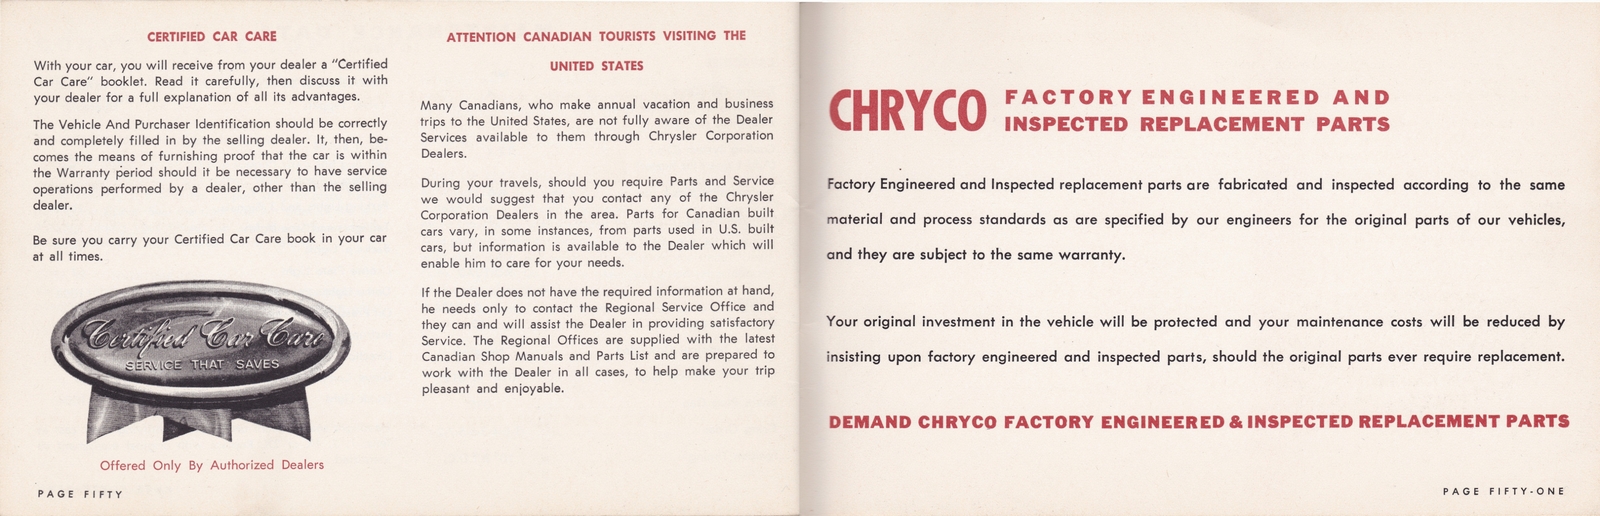 n_1964 Chrysler Owner's Manual (Cdn)-50-51.jpg